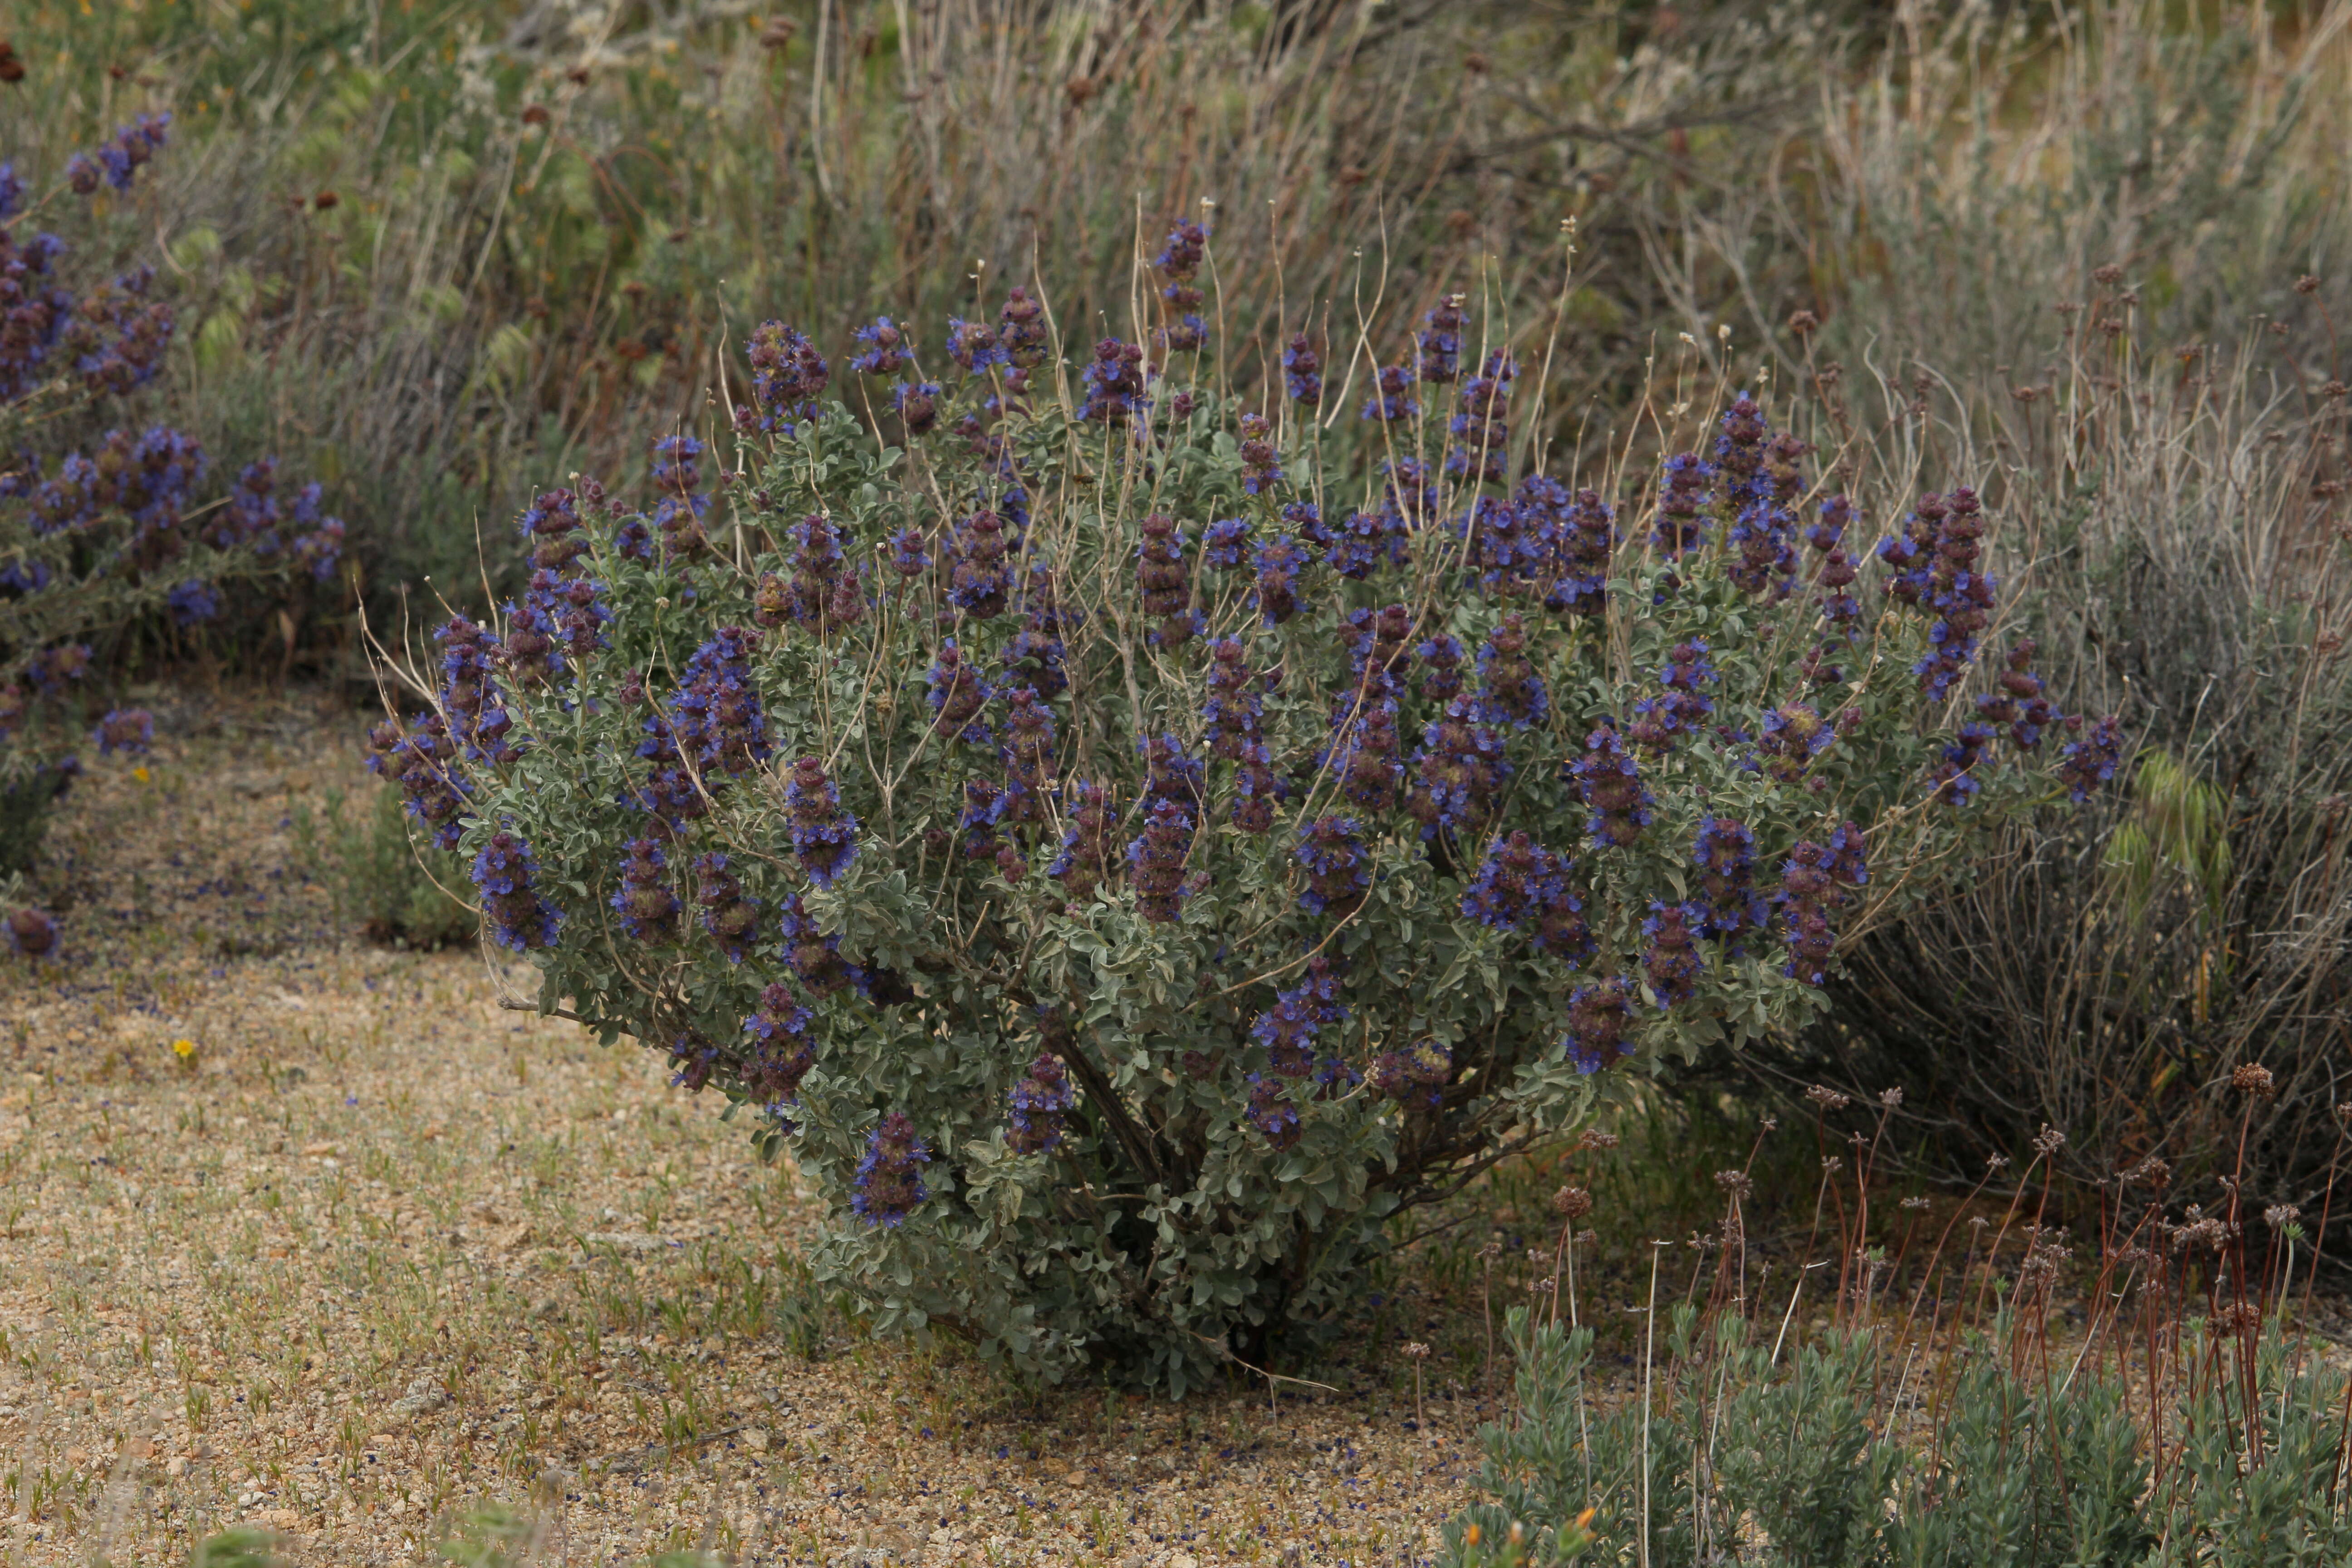 Image of purple sage